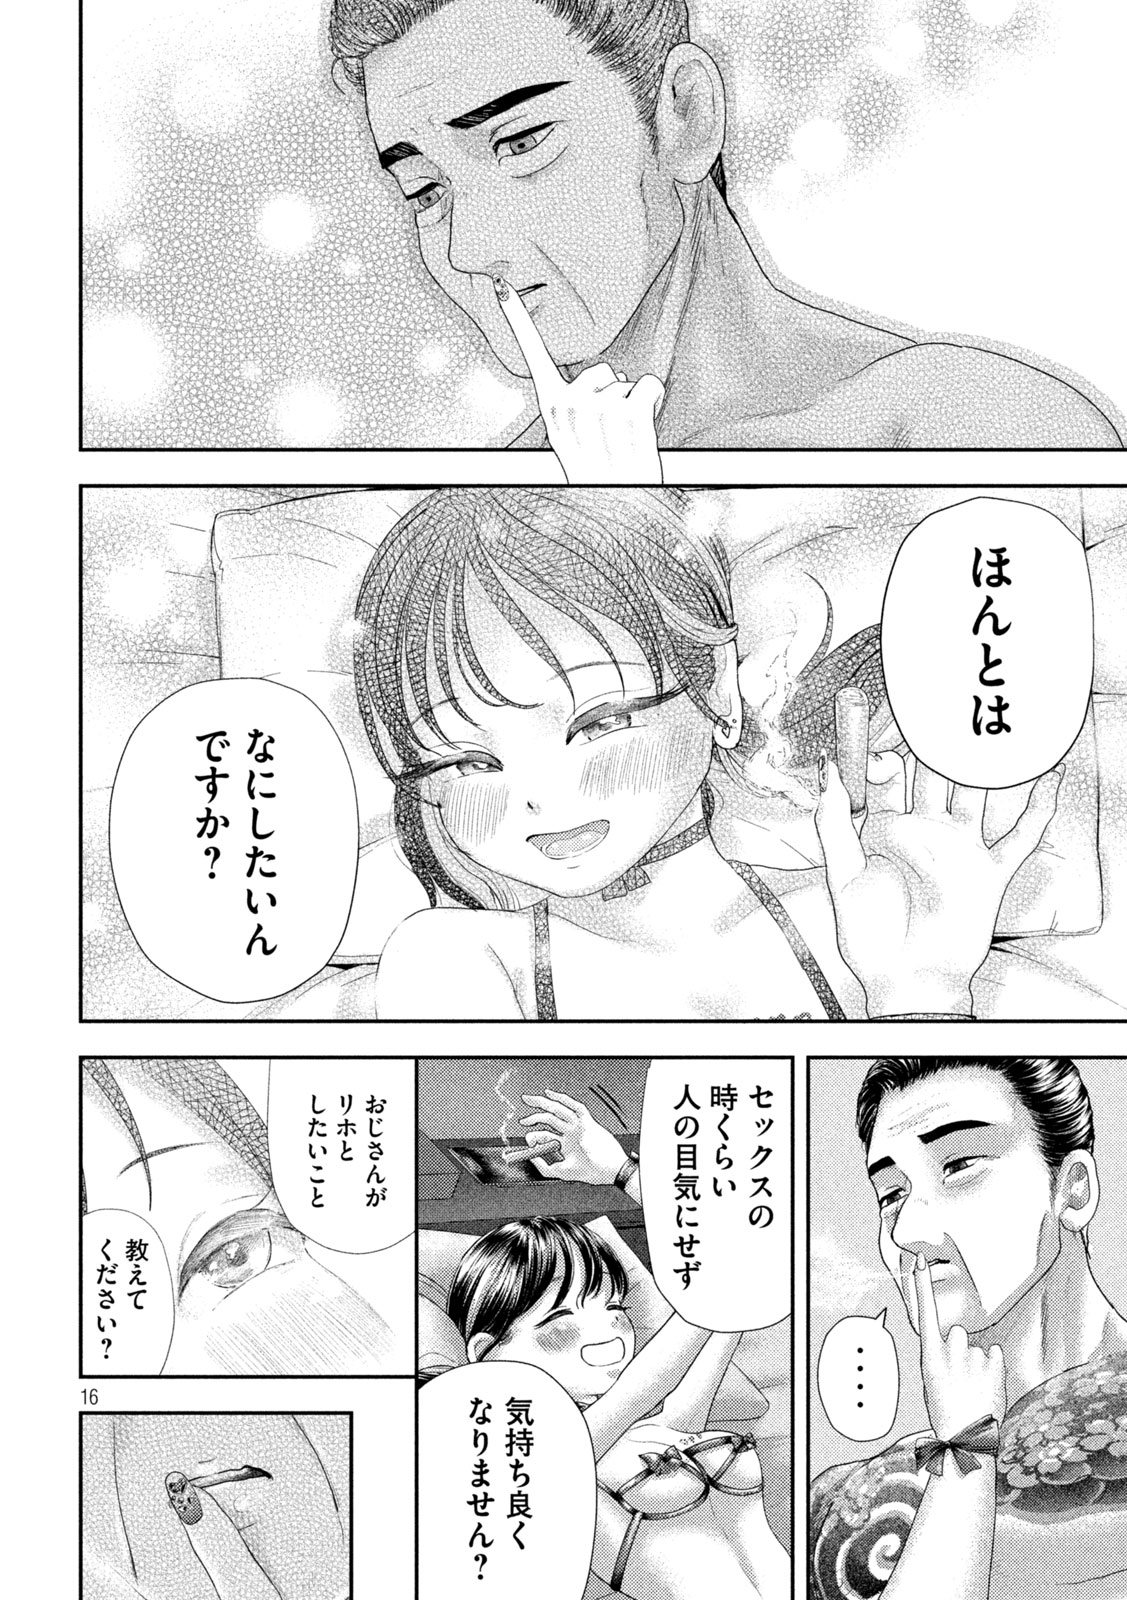 Nezumi no Koi - Chapter 30 - Page 16